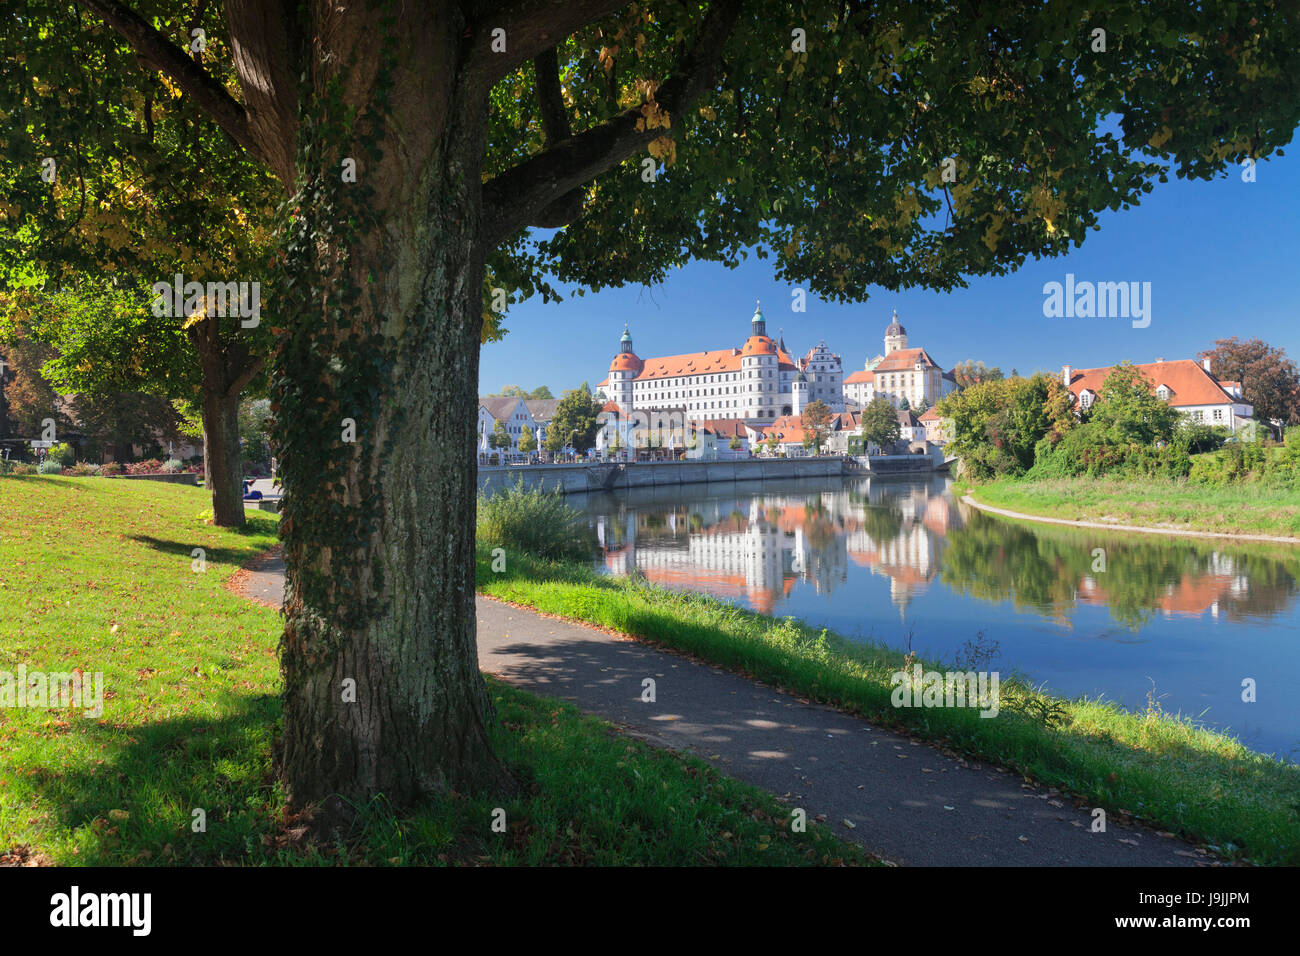 El muelle del Danubio con castillo residencia Neuburger, Neuburg en el Danubio, la Alta Baviera, Alemania Foto de stock